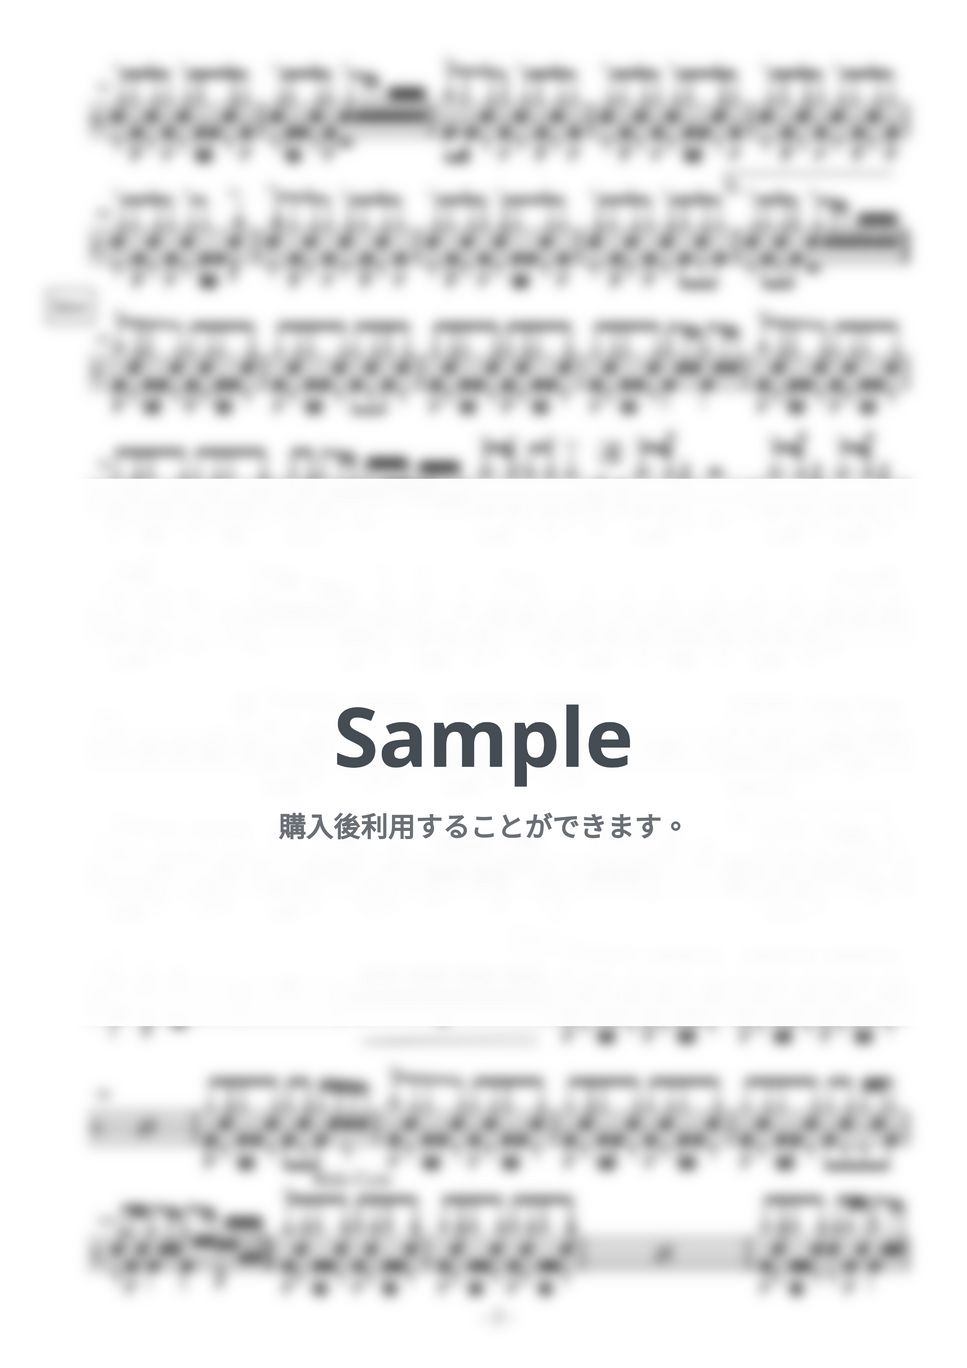 和楽器バンド - 千本桜 by Cozy Up ドラム教室